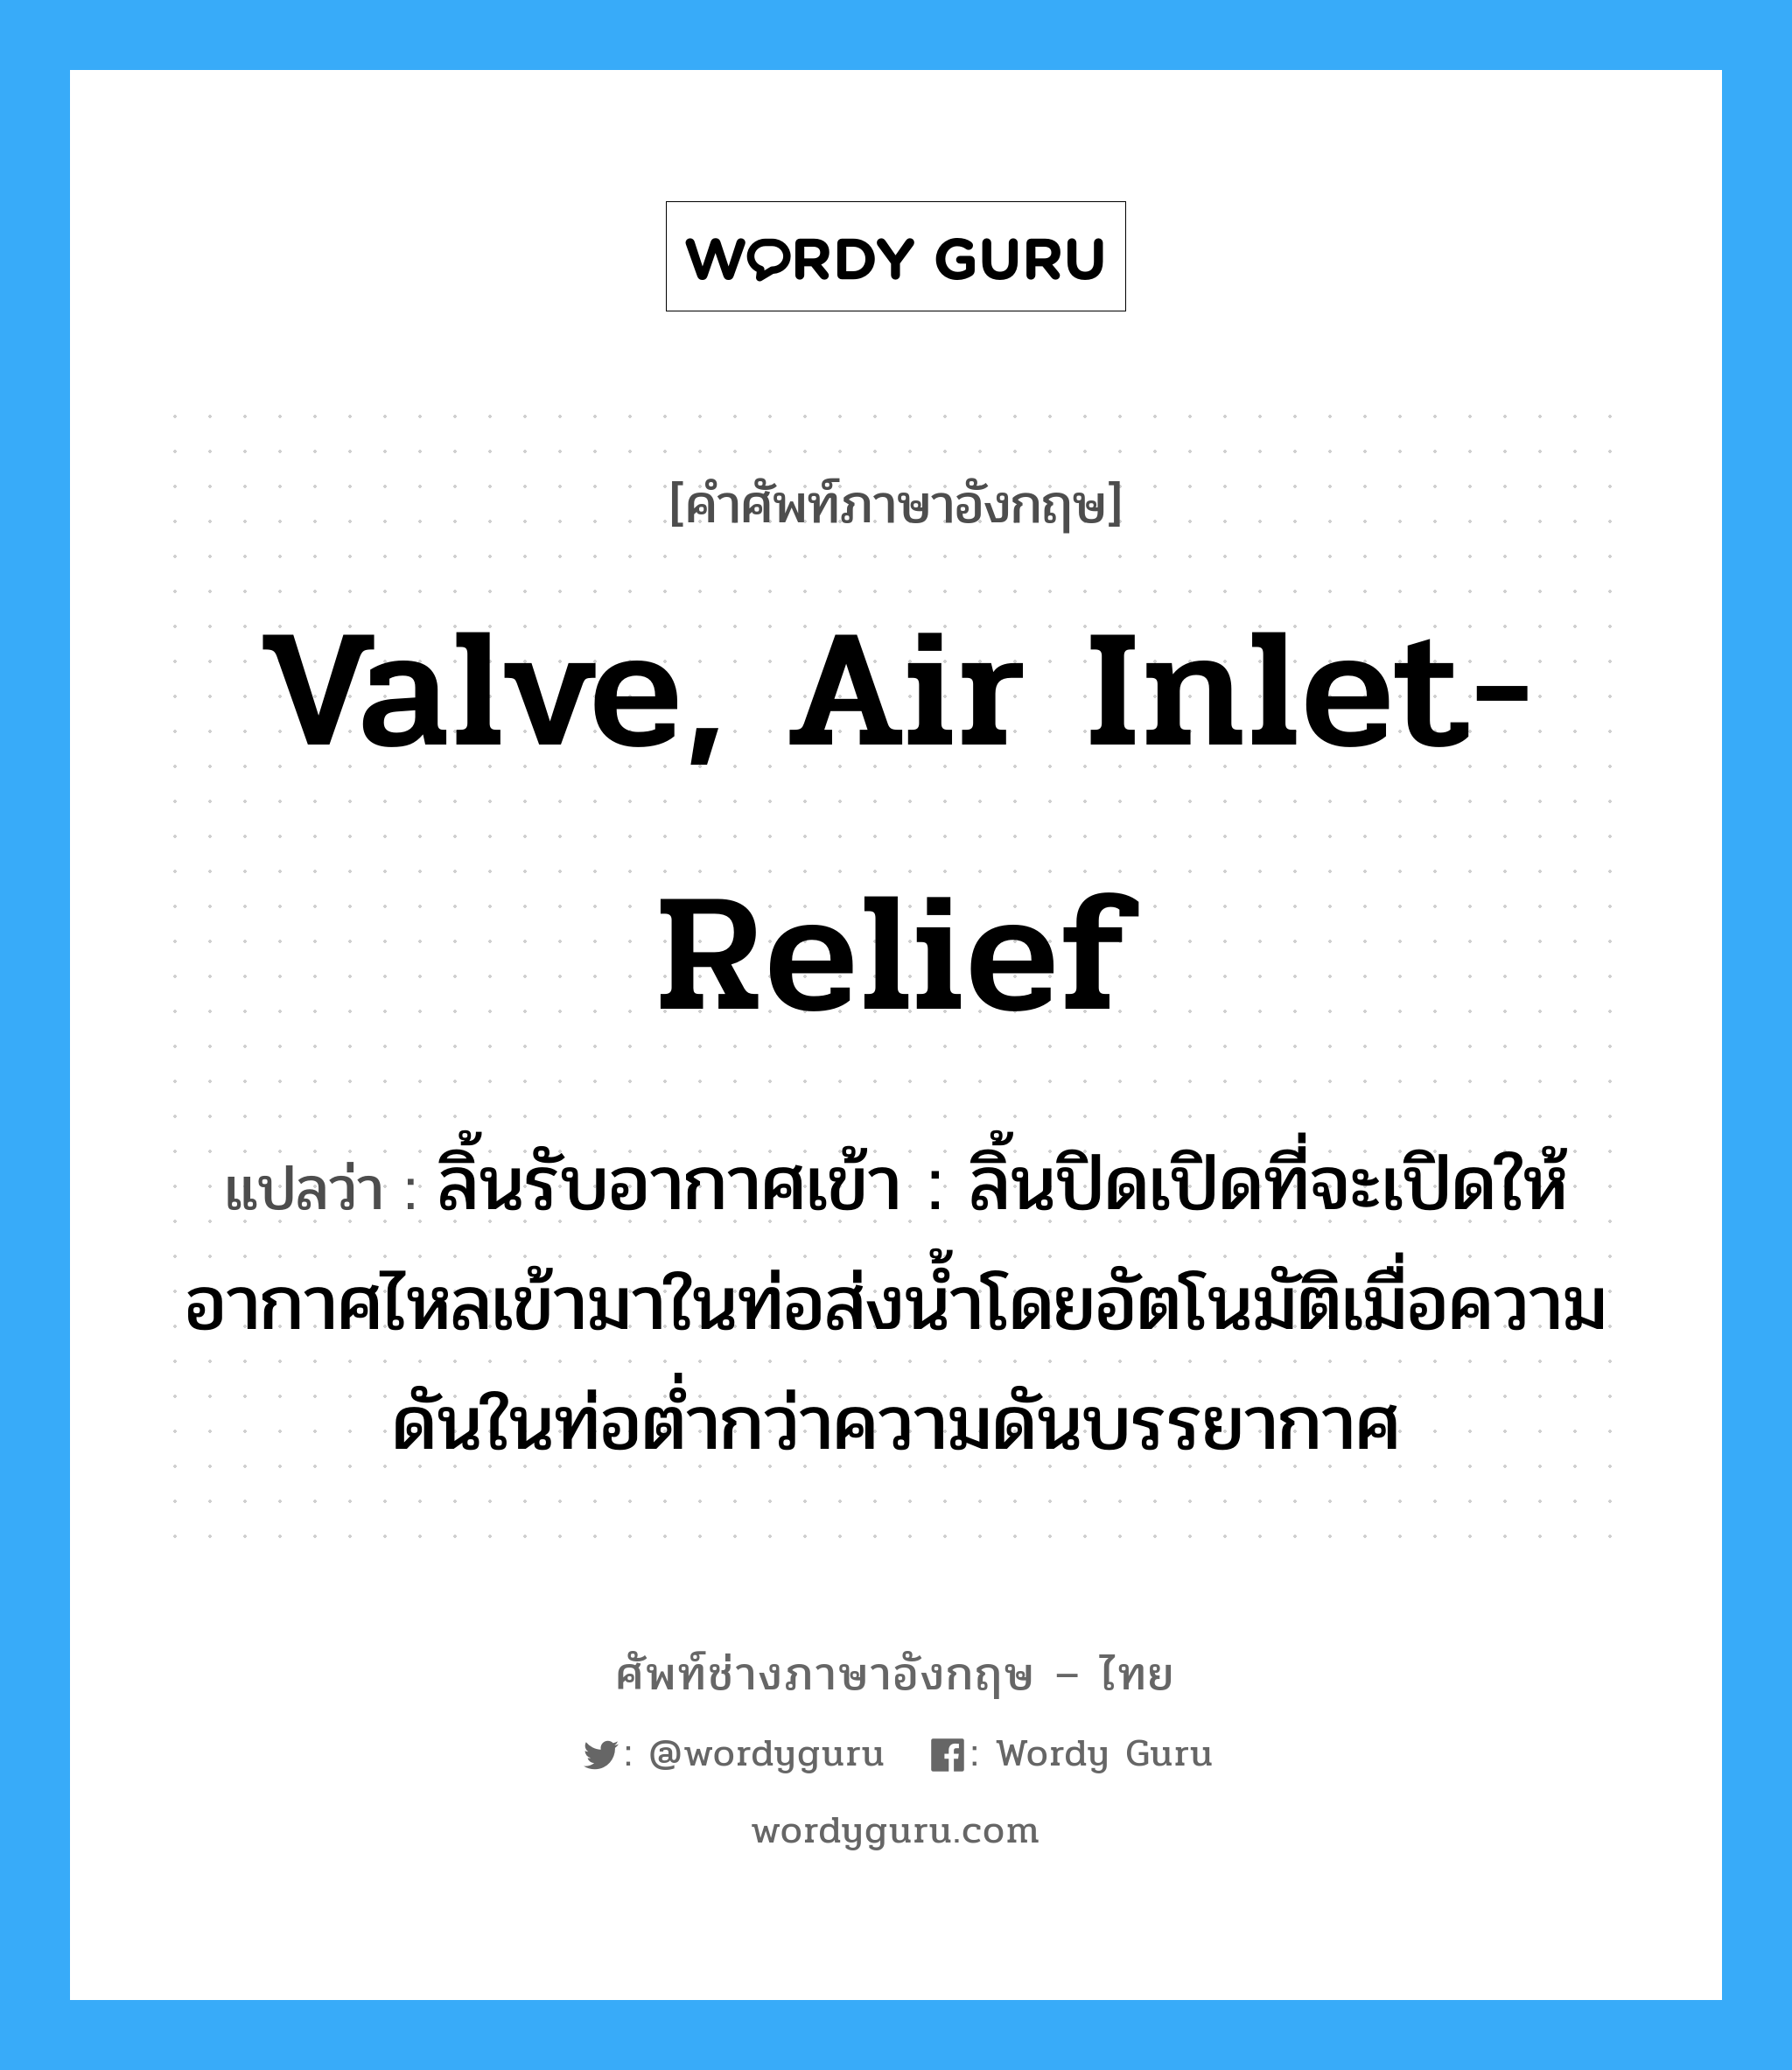 valve, air inlet-relief แปลว่า?, คำศัพท์ช่างภาษาอังกฤษ - ไทย valve, air inlet-relief คำศัพท์ภาษาอังกฤษ valve, air inlet-relief แปลว่า ลิ้นรับอากาศเข้า : ลิ้นปิดเปิดที่จะเปิดให้อากาศไหลเข้ามาในท่อส่งน้ำโดยอัตโนมัติเมื่อความดันในท่อต่ำกว่าความดันบรรยากาศ